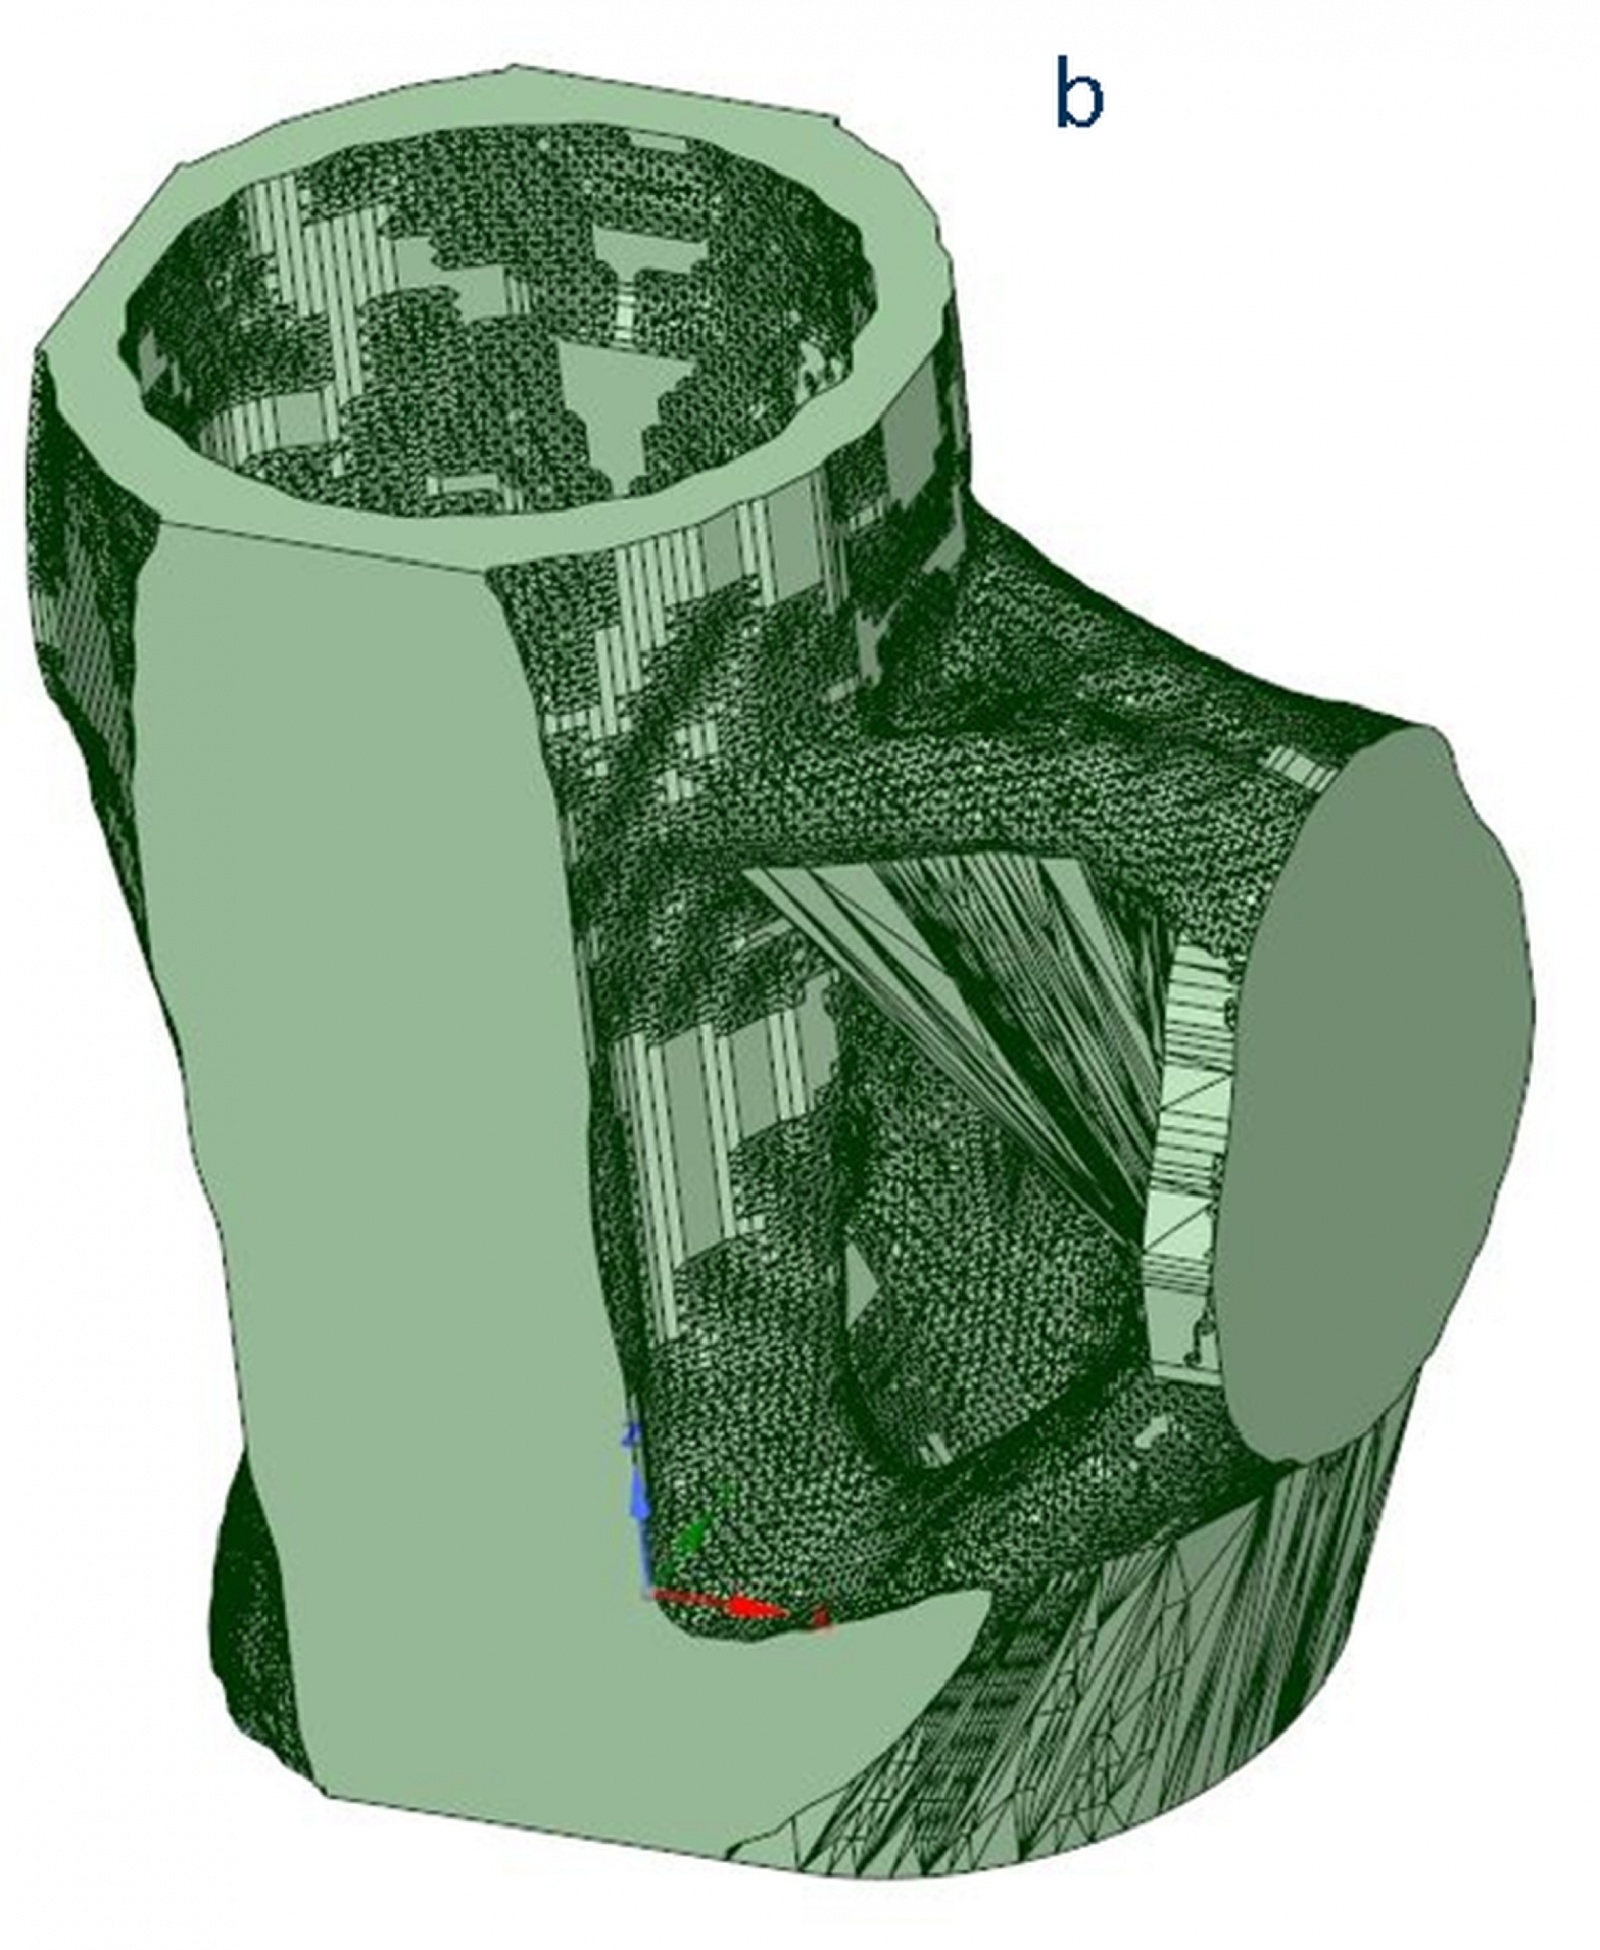 3D-WELD, Anpassung der Geometrie zur Verbesserung der Herstellbarkeit, Bild: Jan Reimann